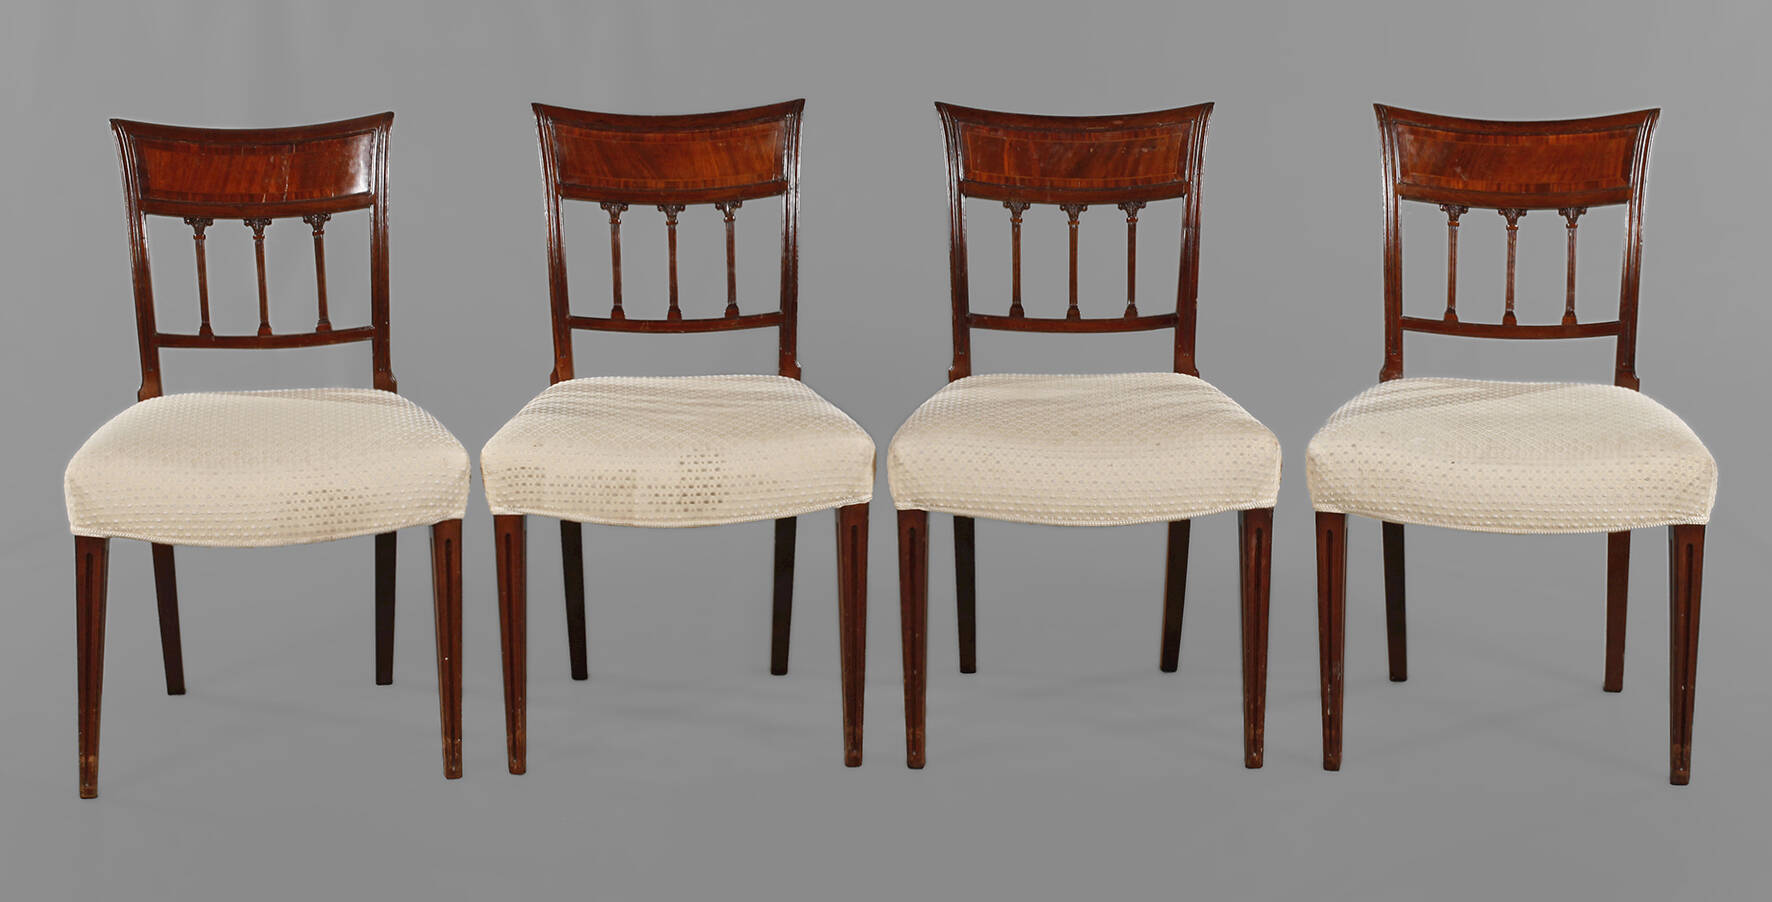 Vier klassizistische Stühle